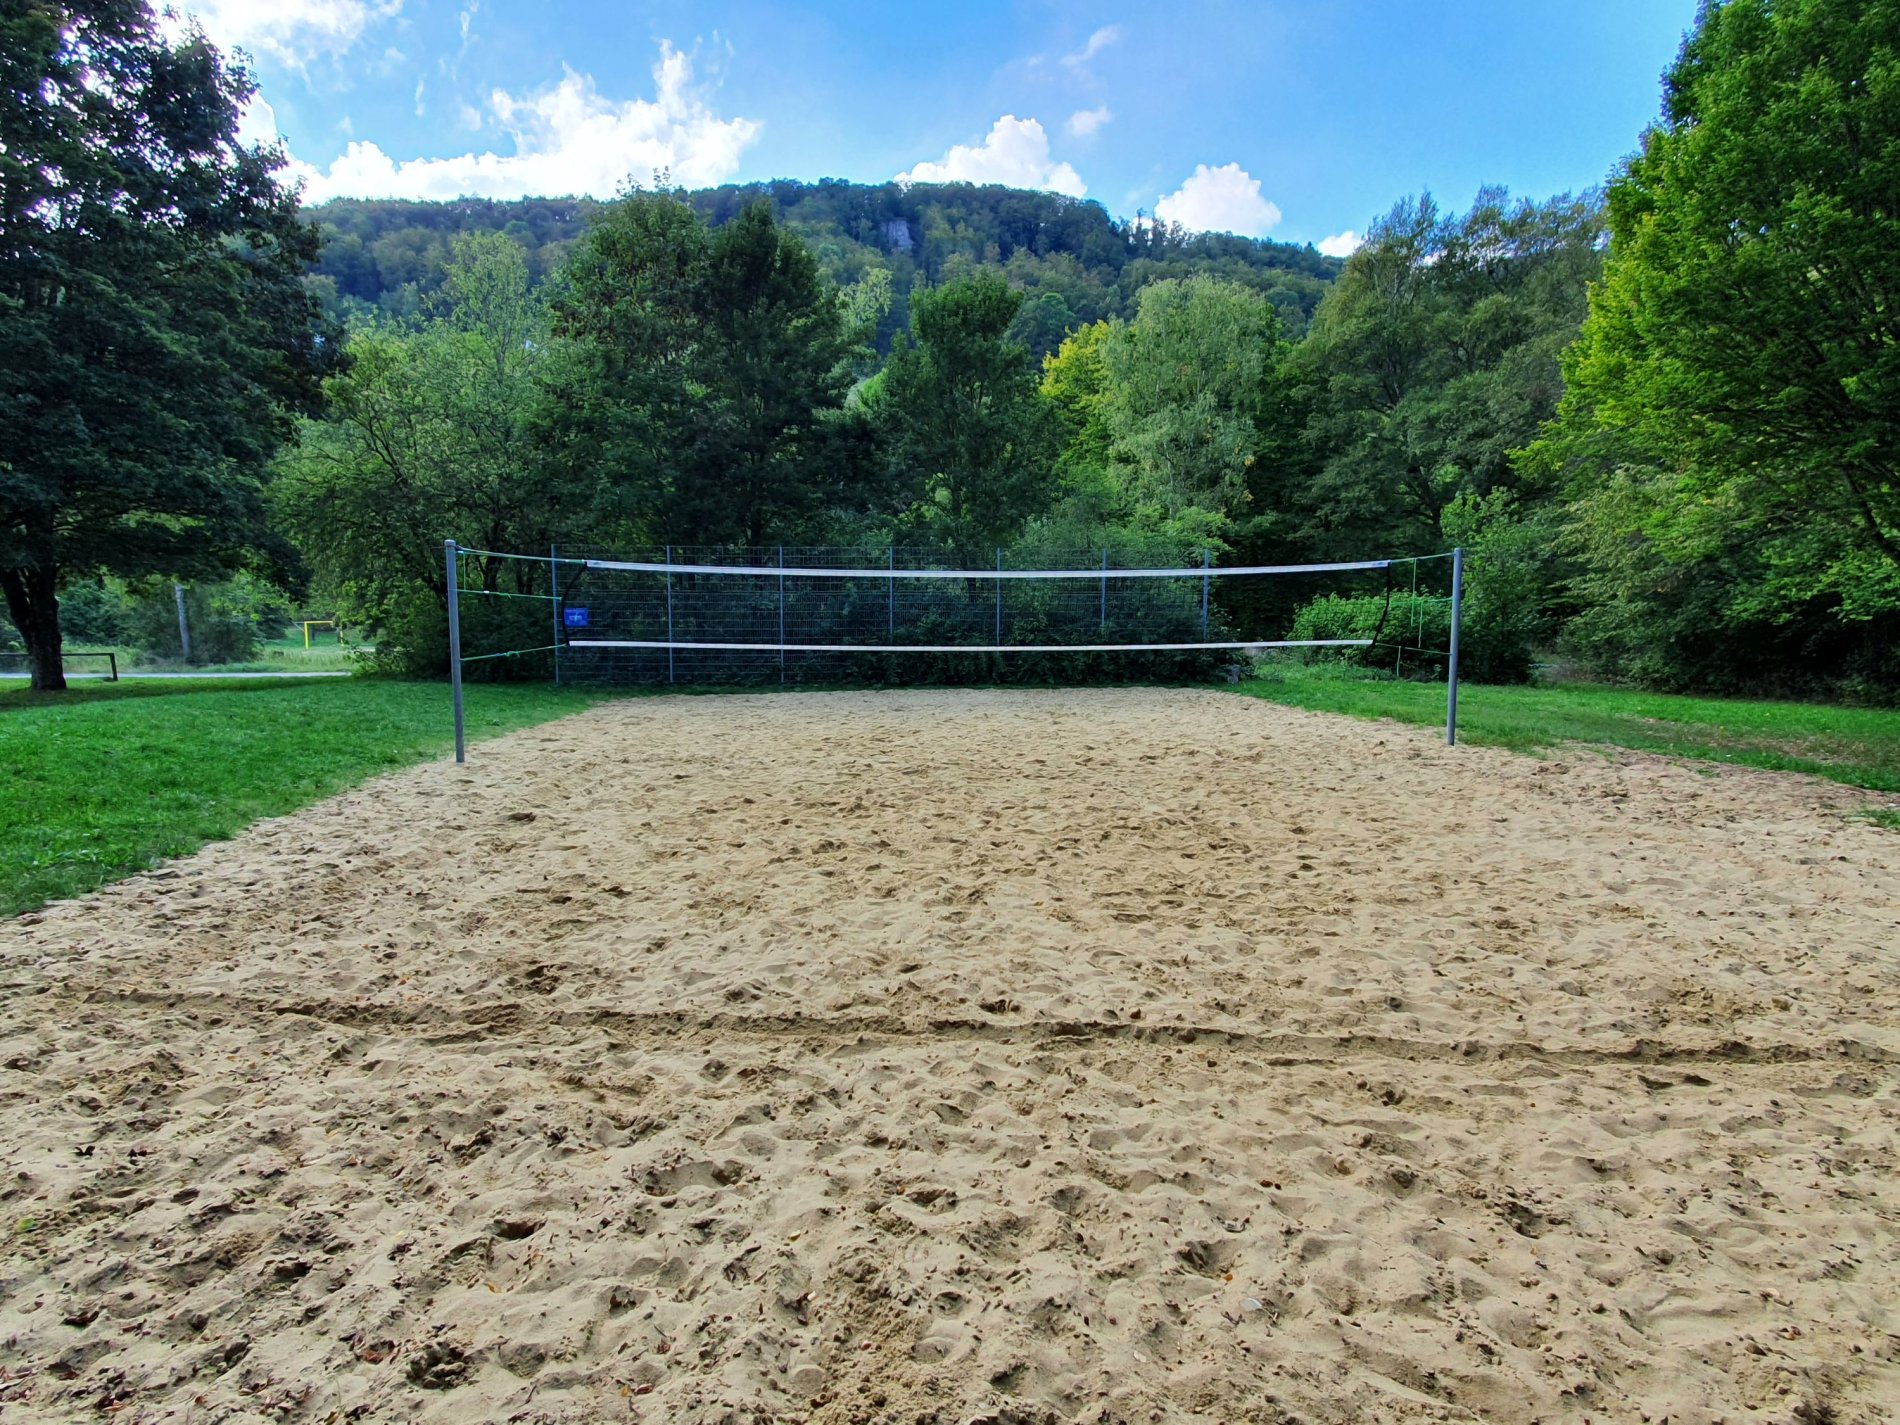 Volleyballplatz ehem. Freibad-Super großes Feld zum Spielen!